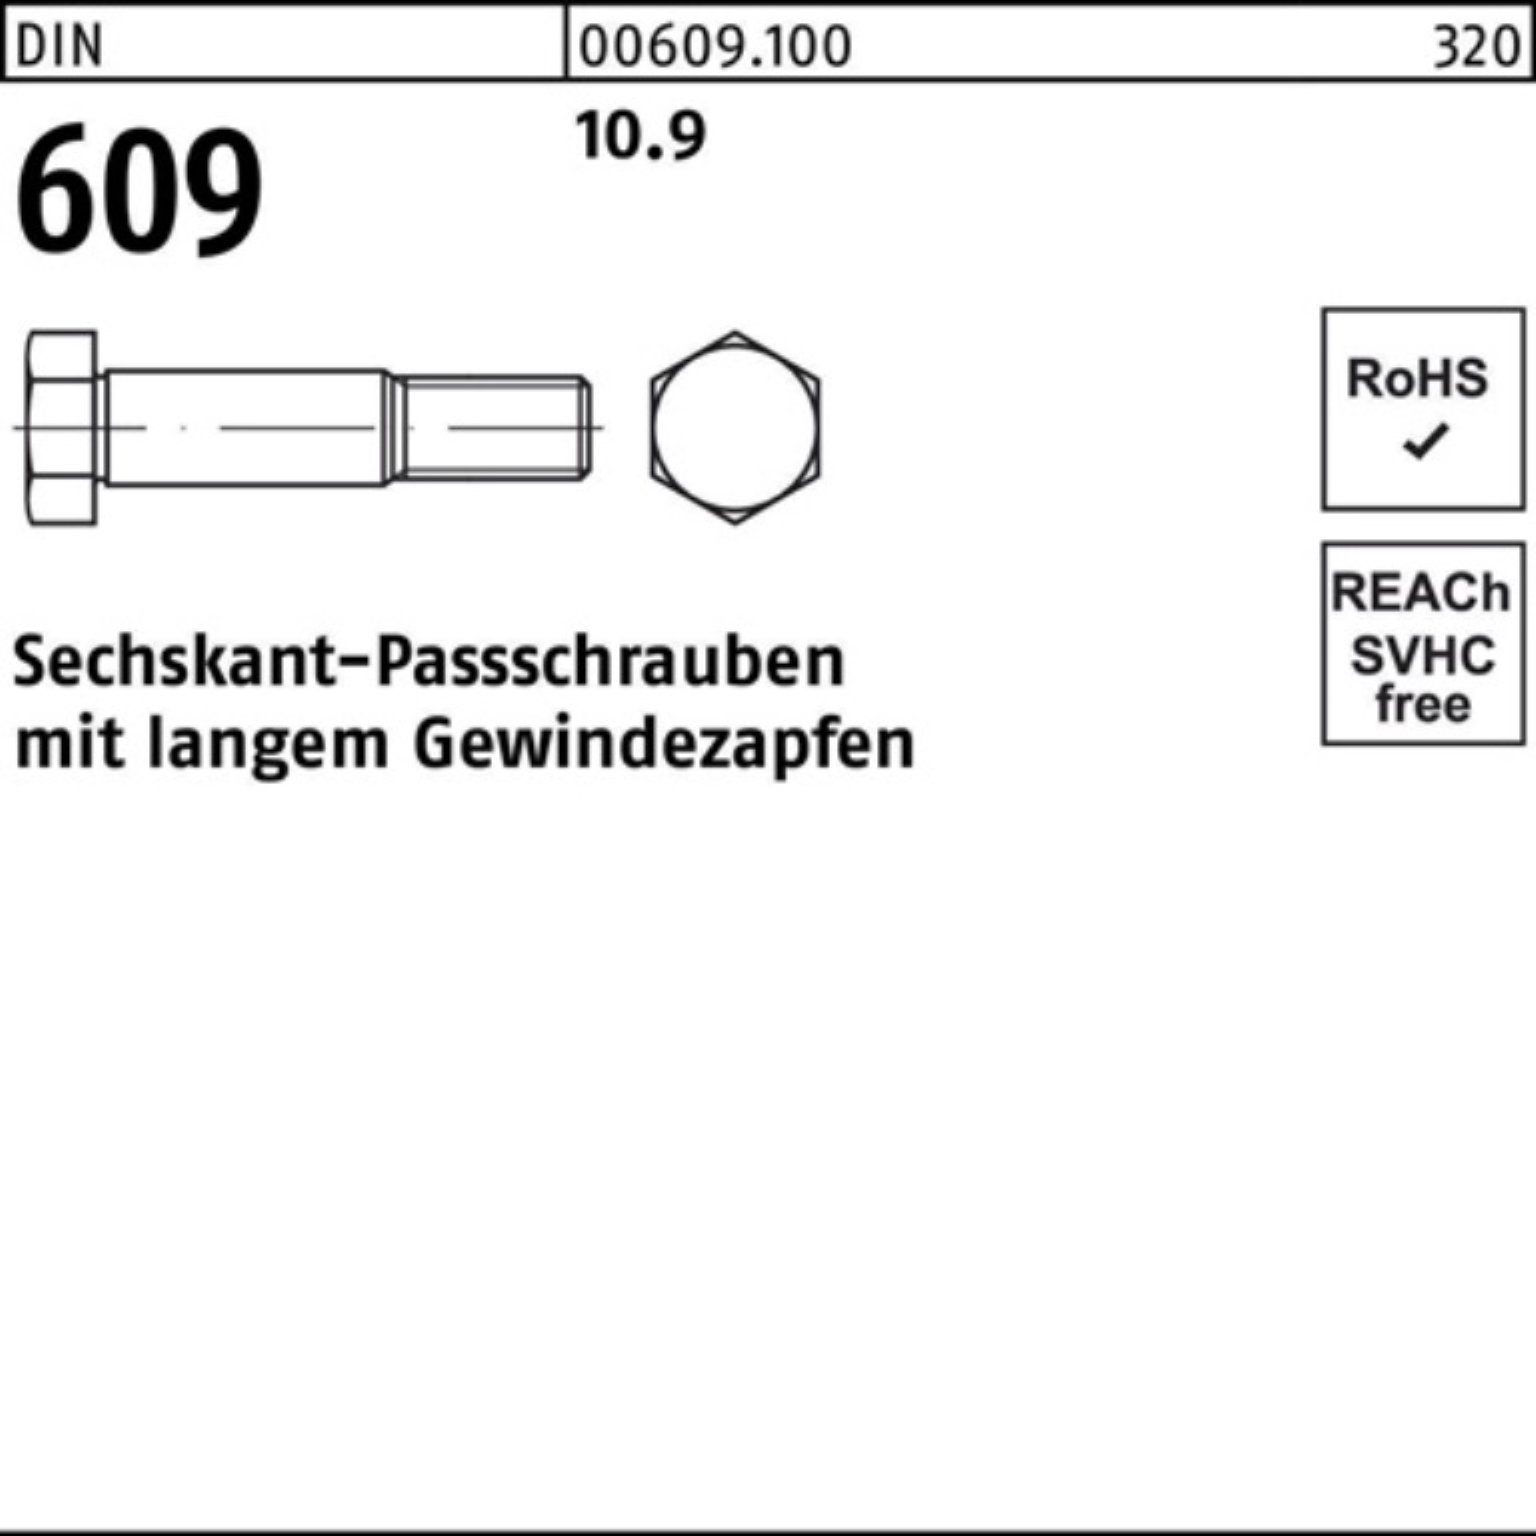 Reyher Schraube 100er Pack langem Sechskantpassschraube Gewindezapfen M12x 50 DIN 609